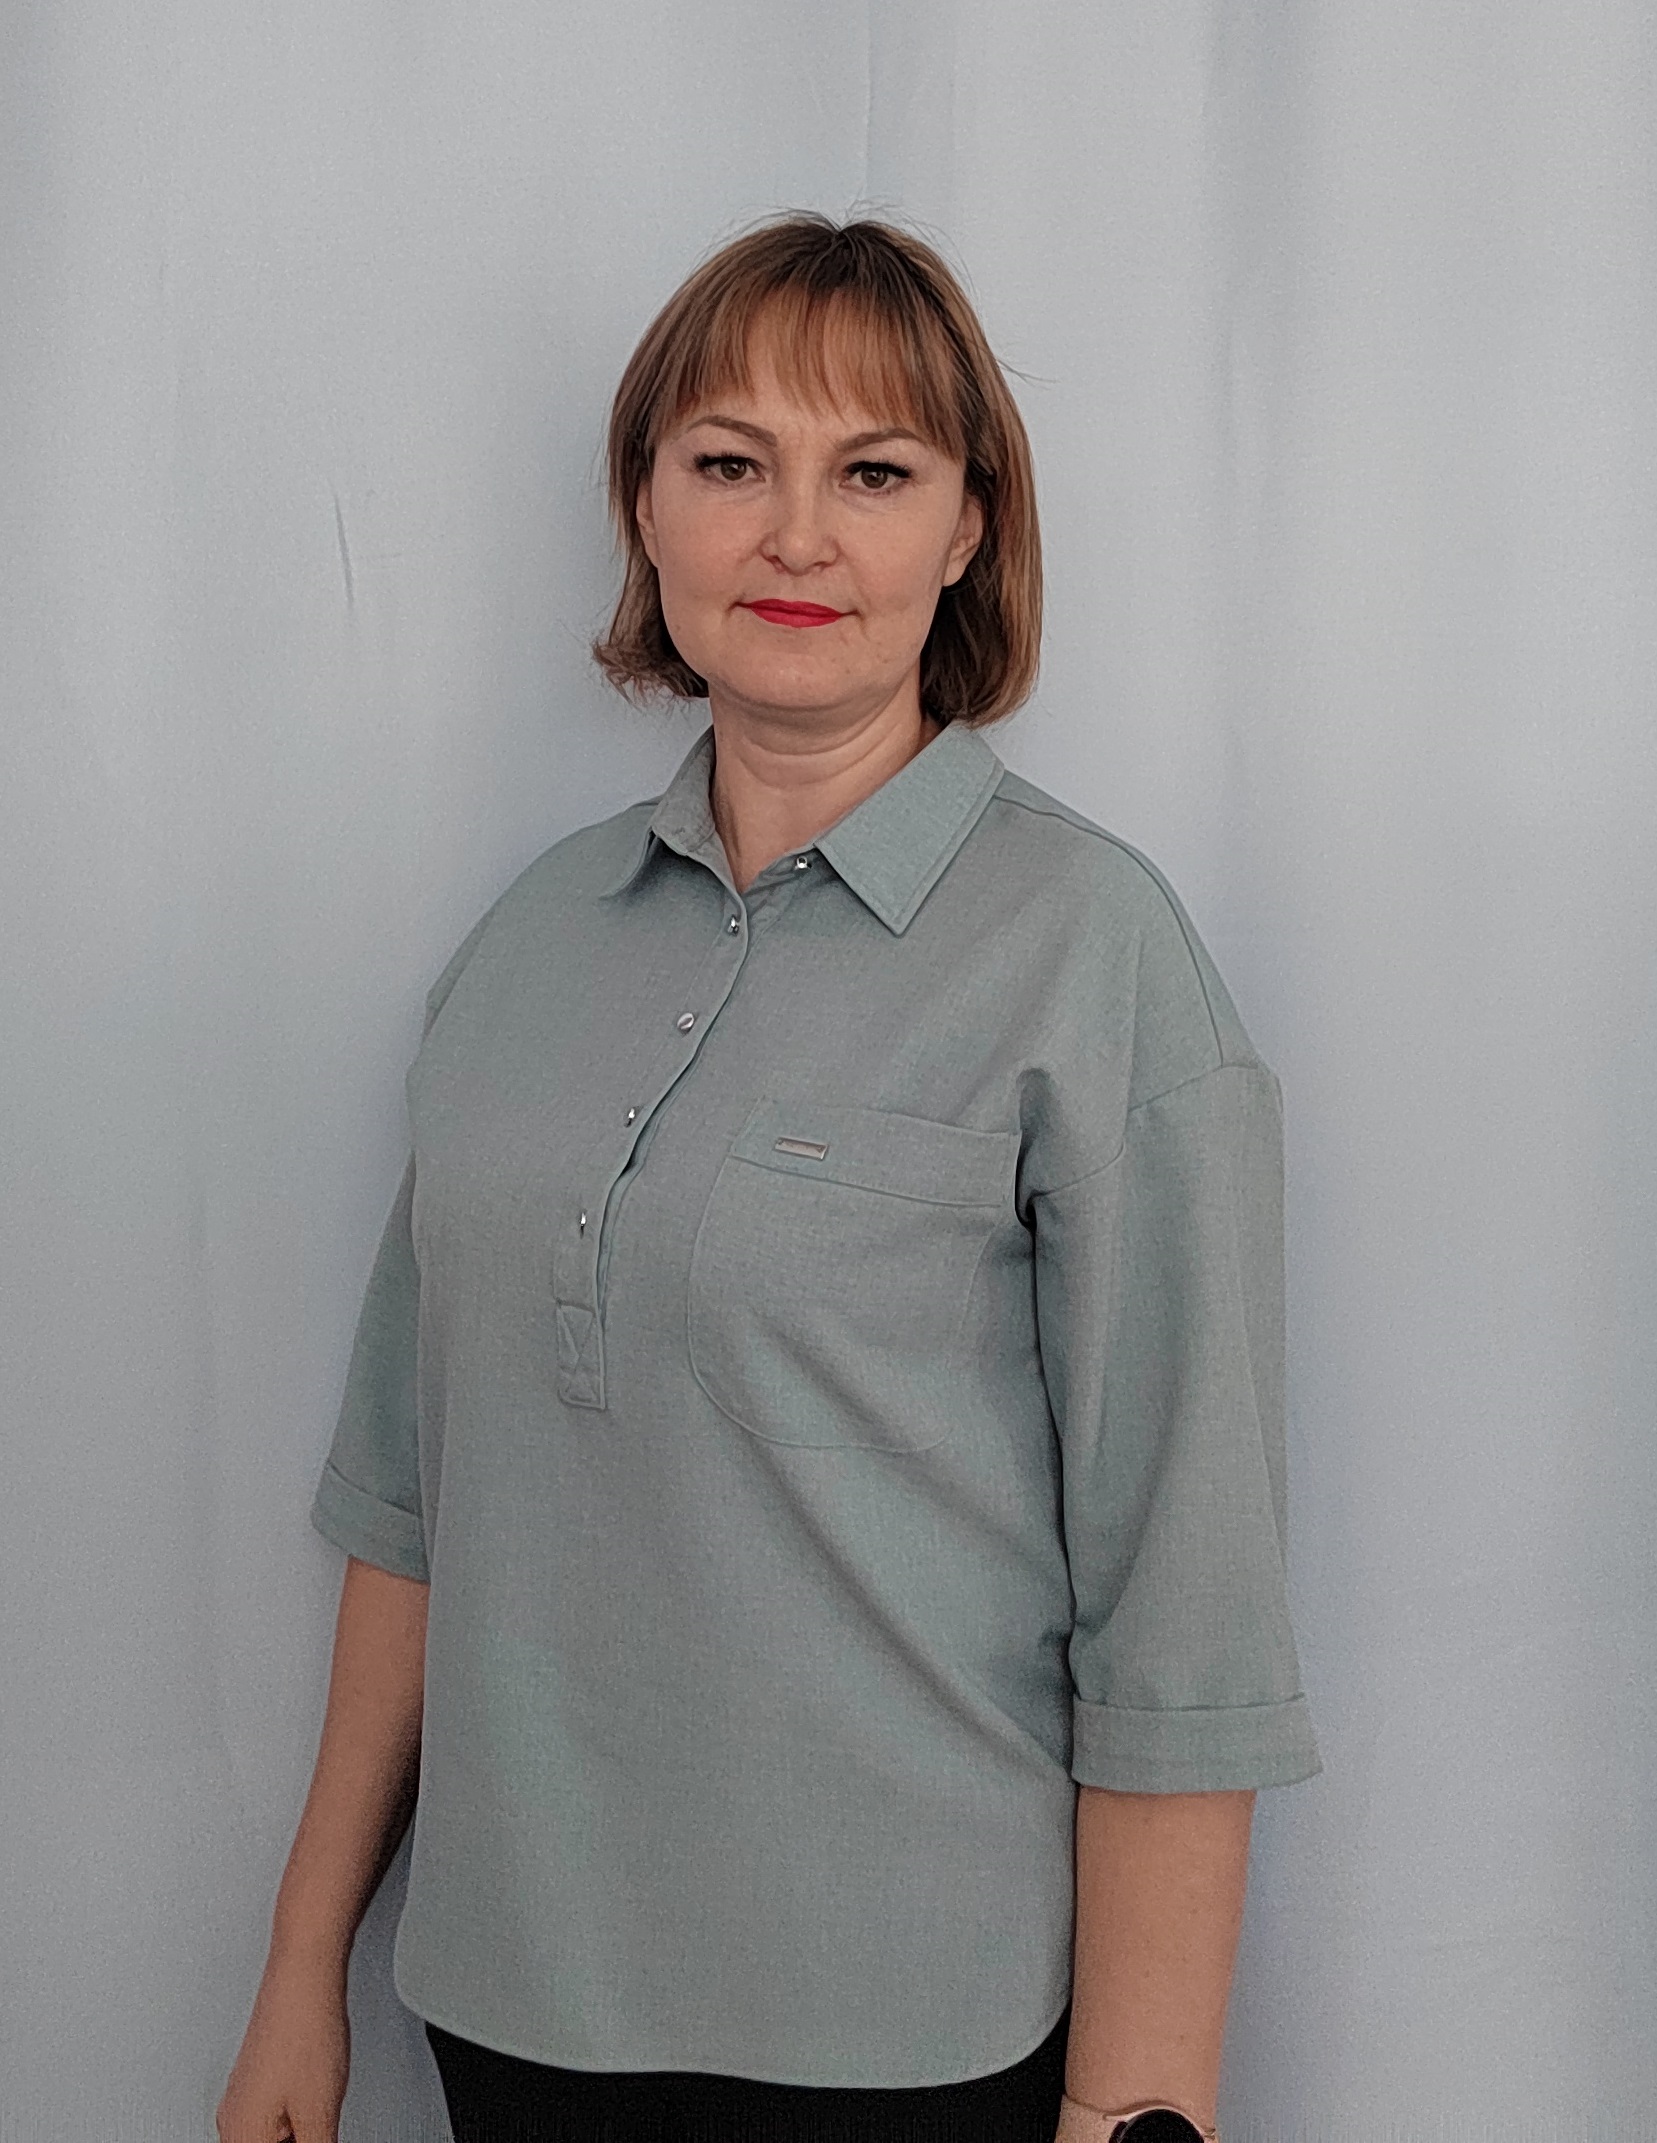 Педагогический работник Ялдаева Рина Рифовна.